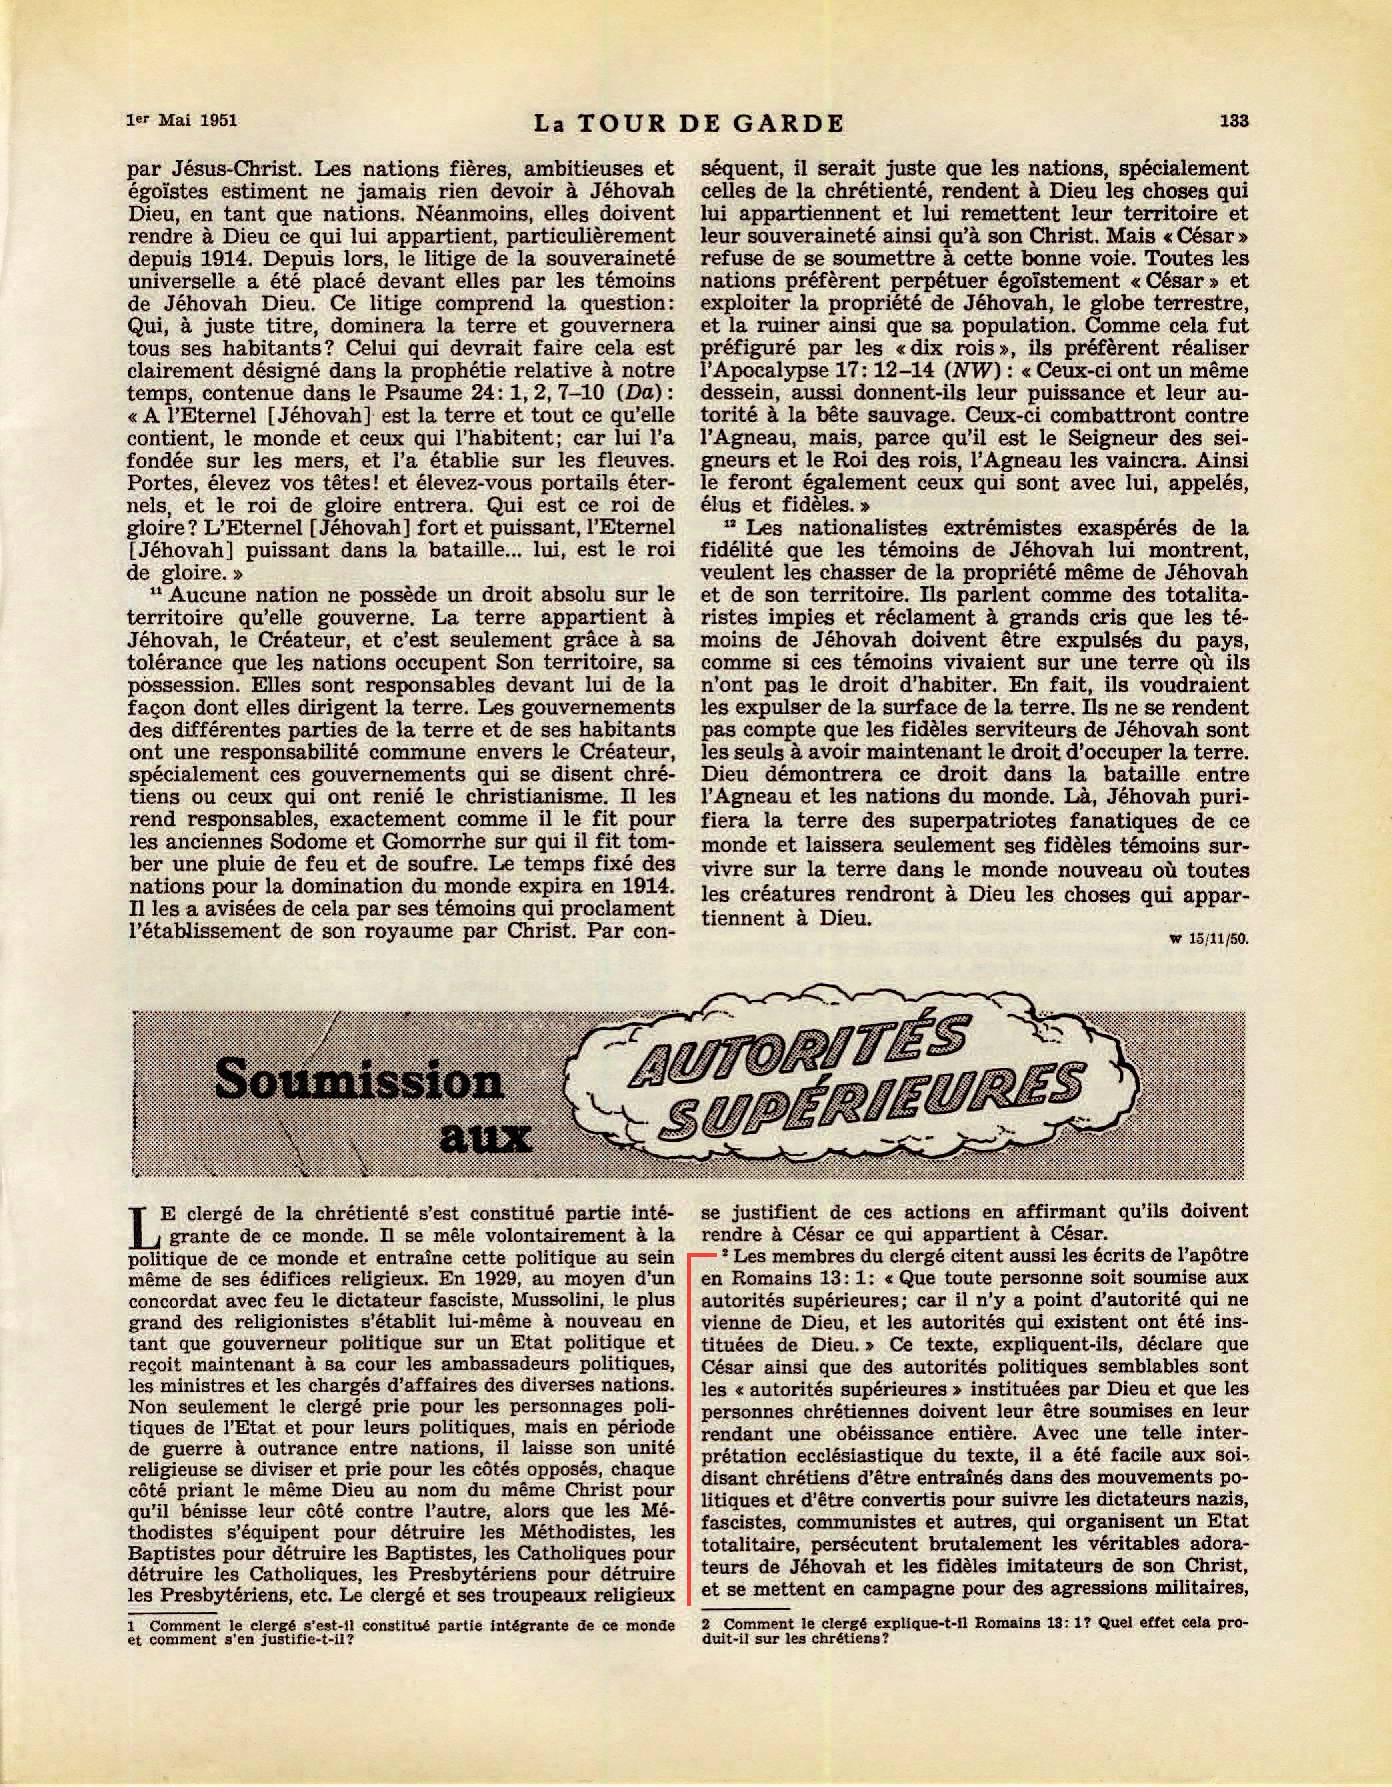 Les autorités supérieures  - Page 2 La-Tour-de-Garde-1-mai-1951-p133